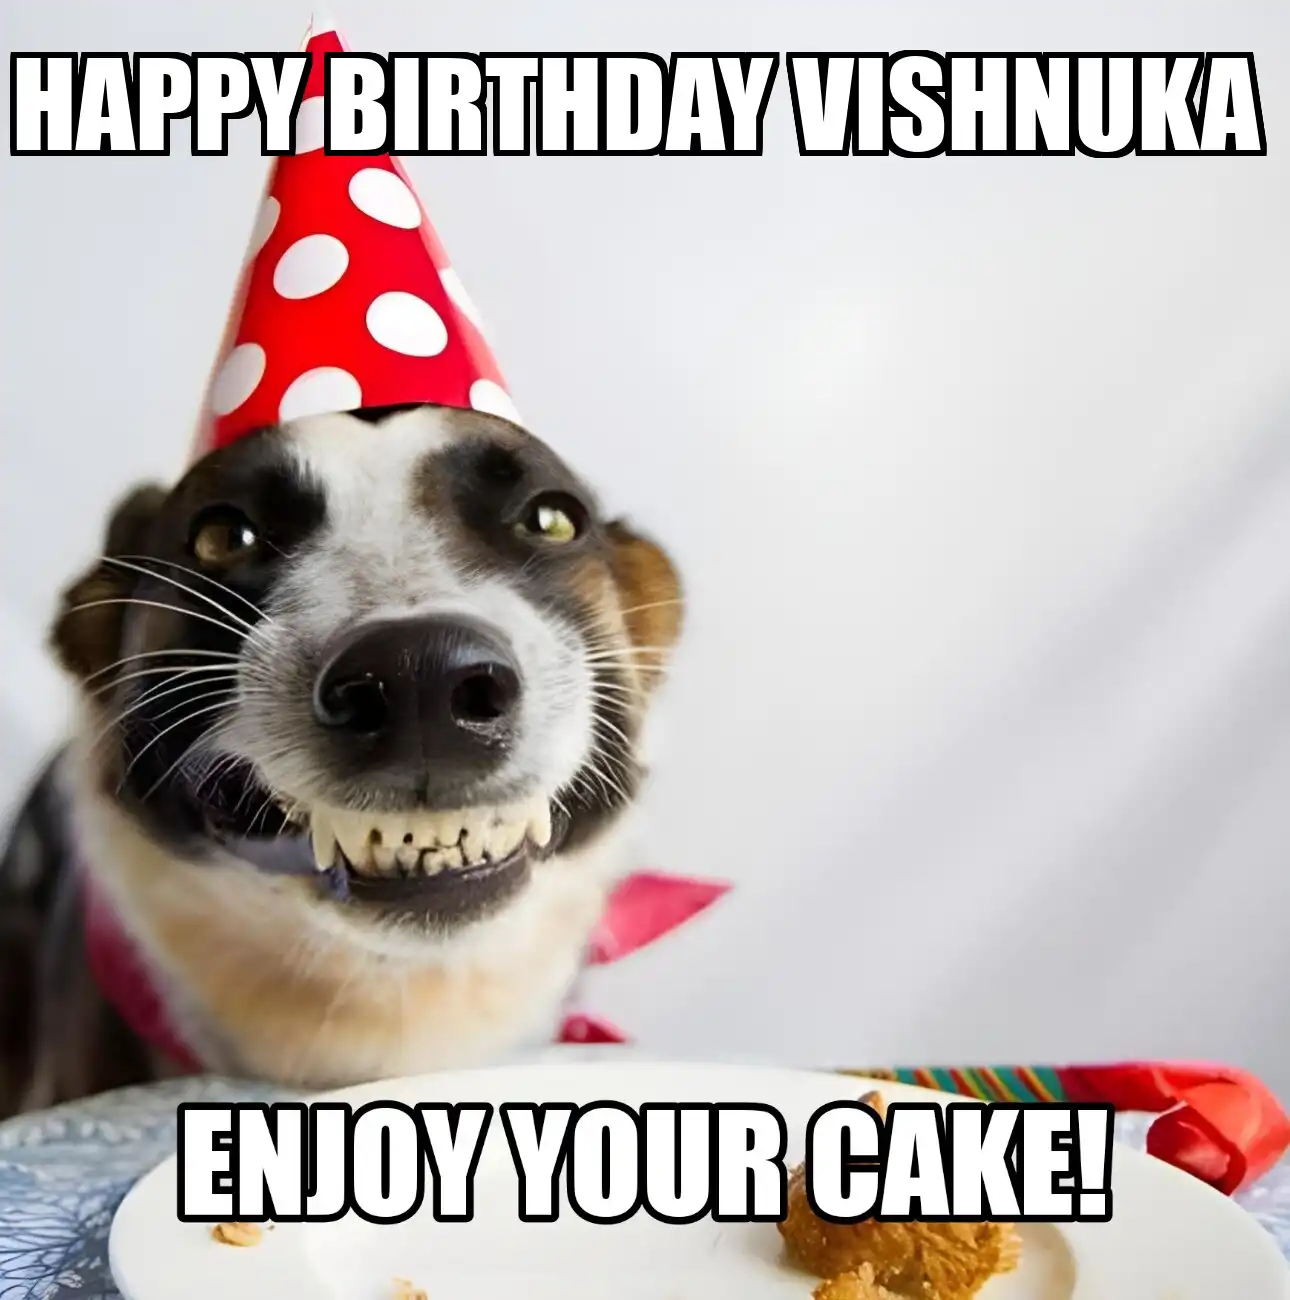 Happy Birthday Vishnuka Enjoy Your Cake Dog Meme